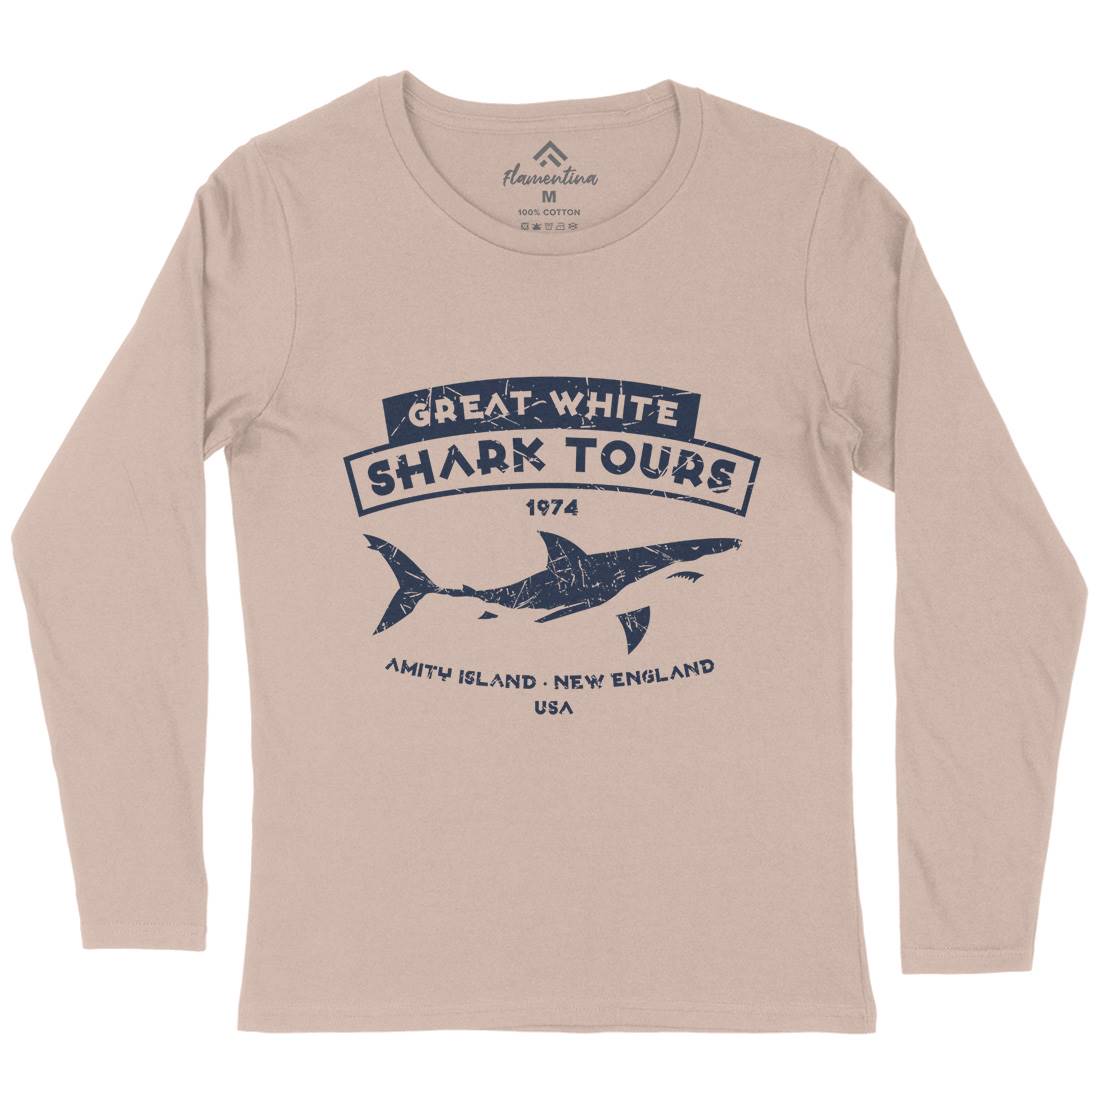 Great White Shark Tours Womens Long Sleeve T-Shirt Navy D348